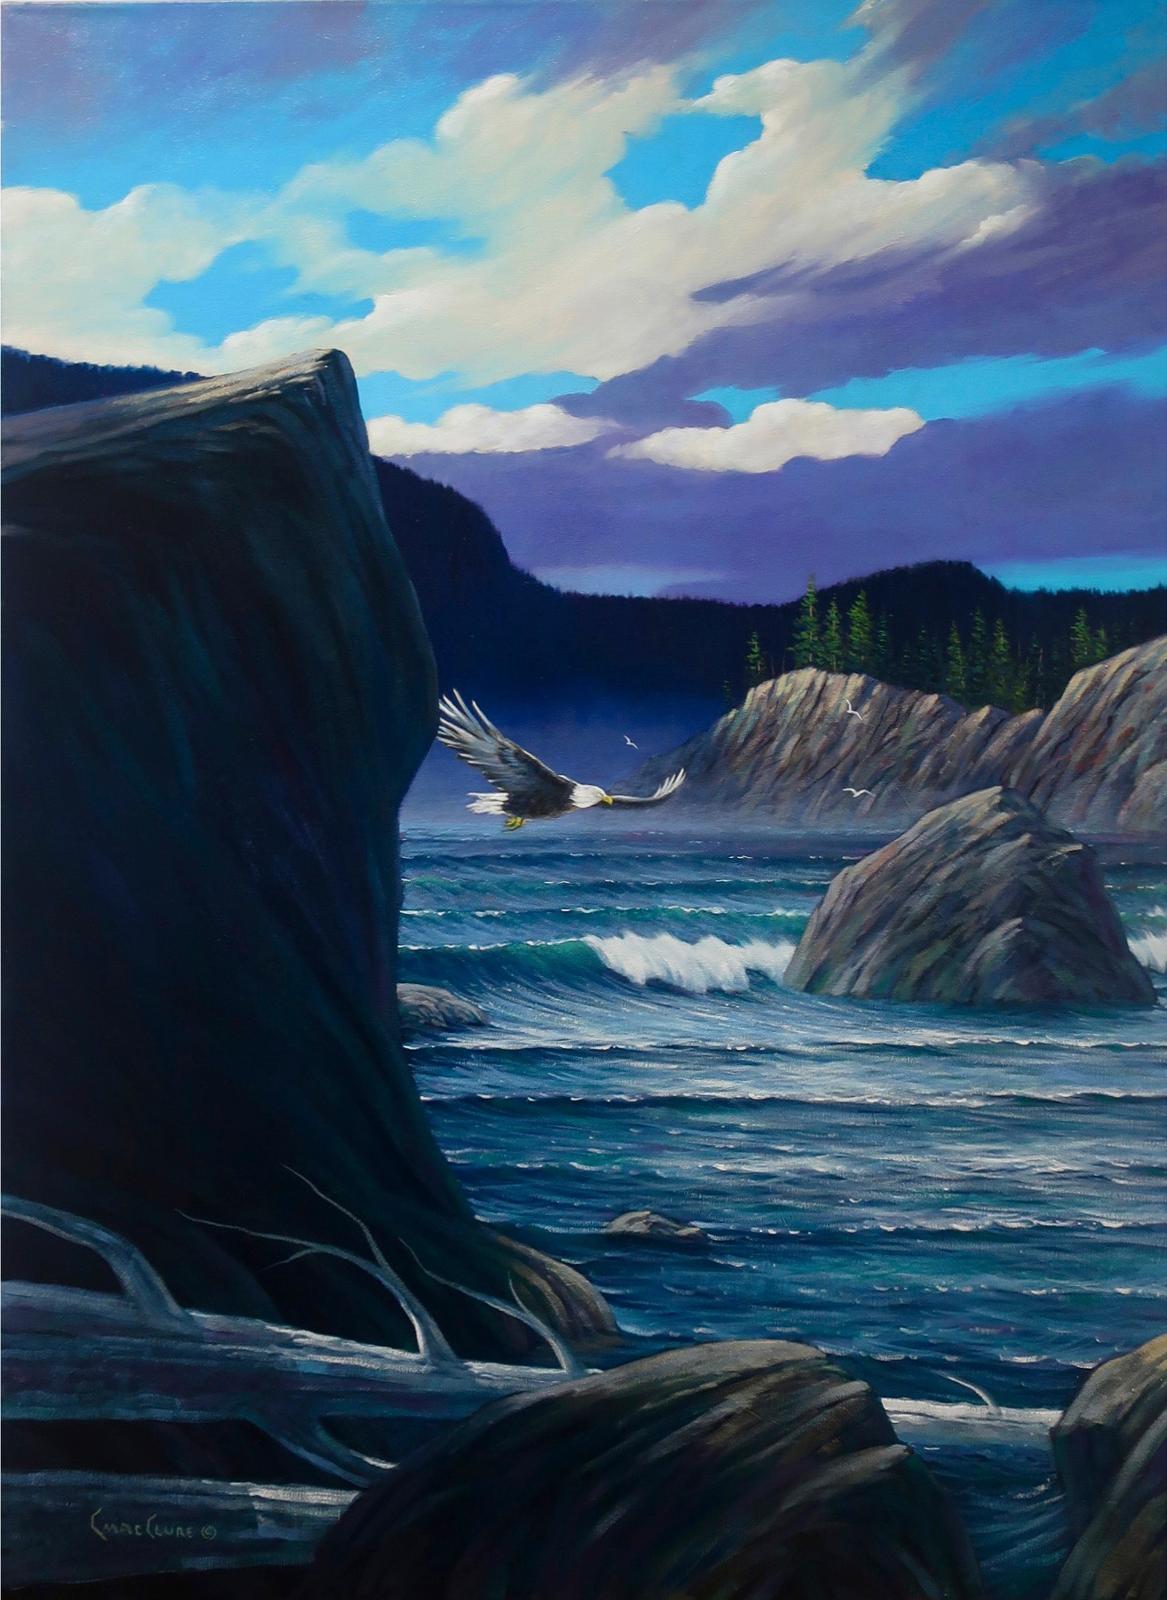 Chris MacClure (1943) - Eagle Cove